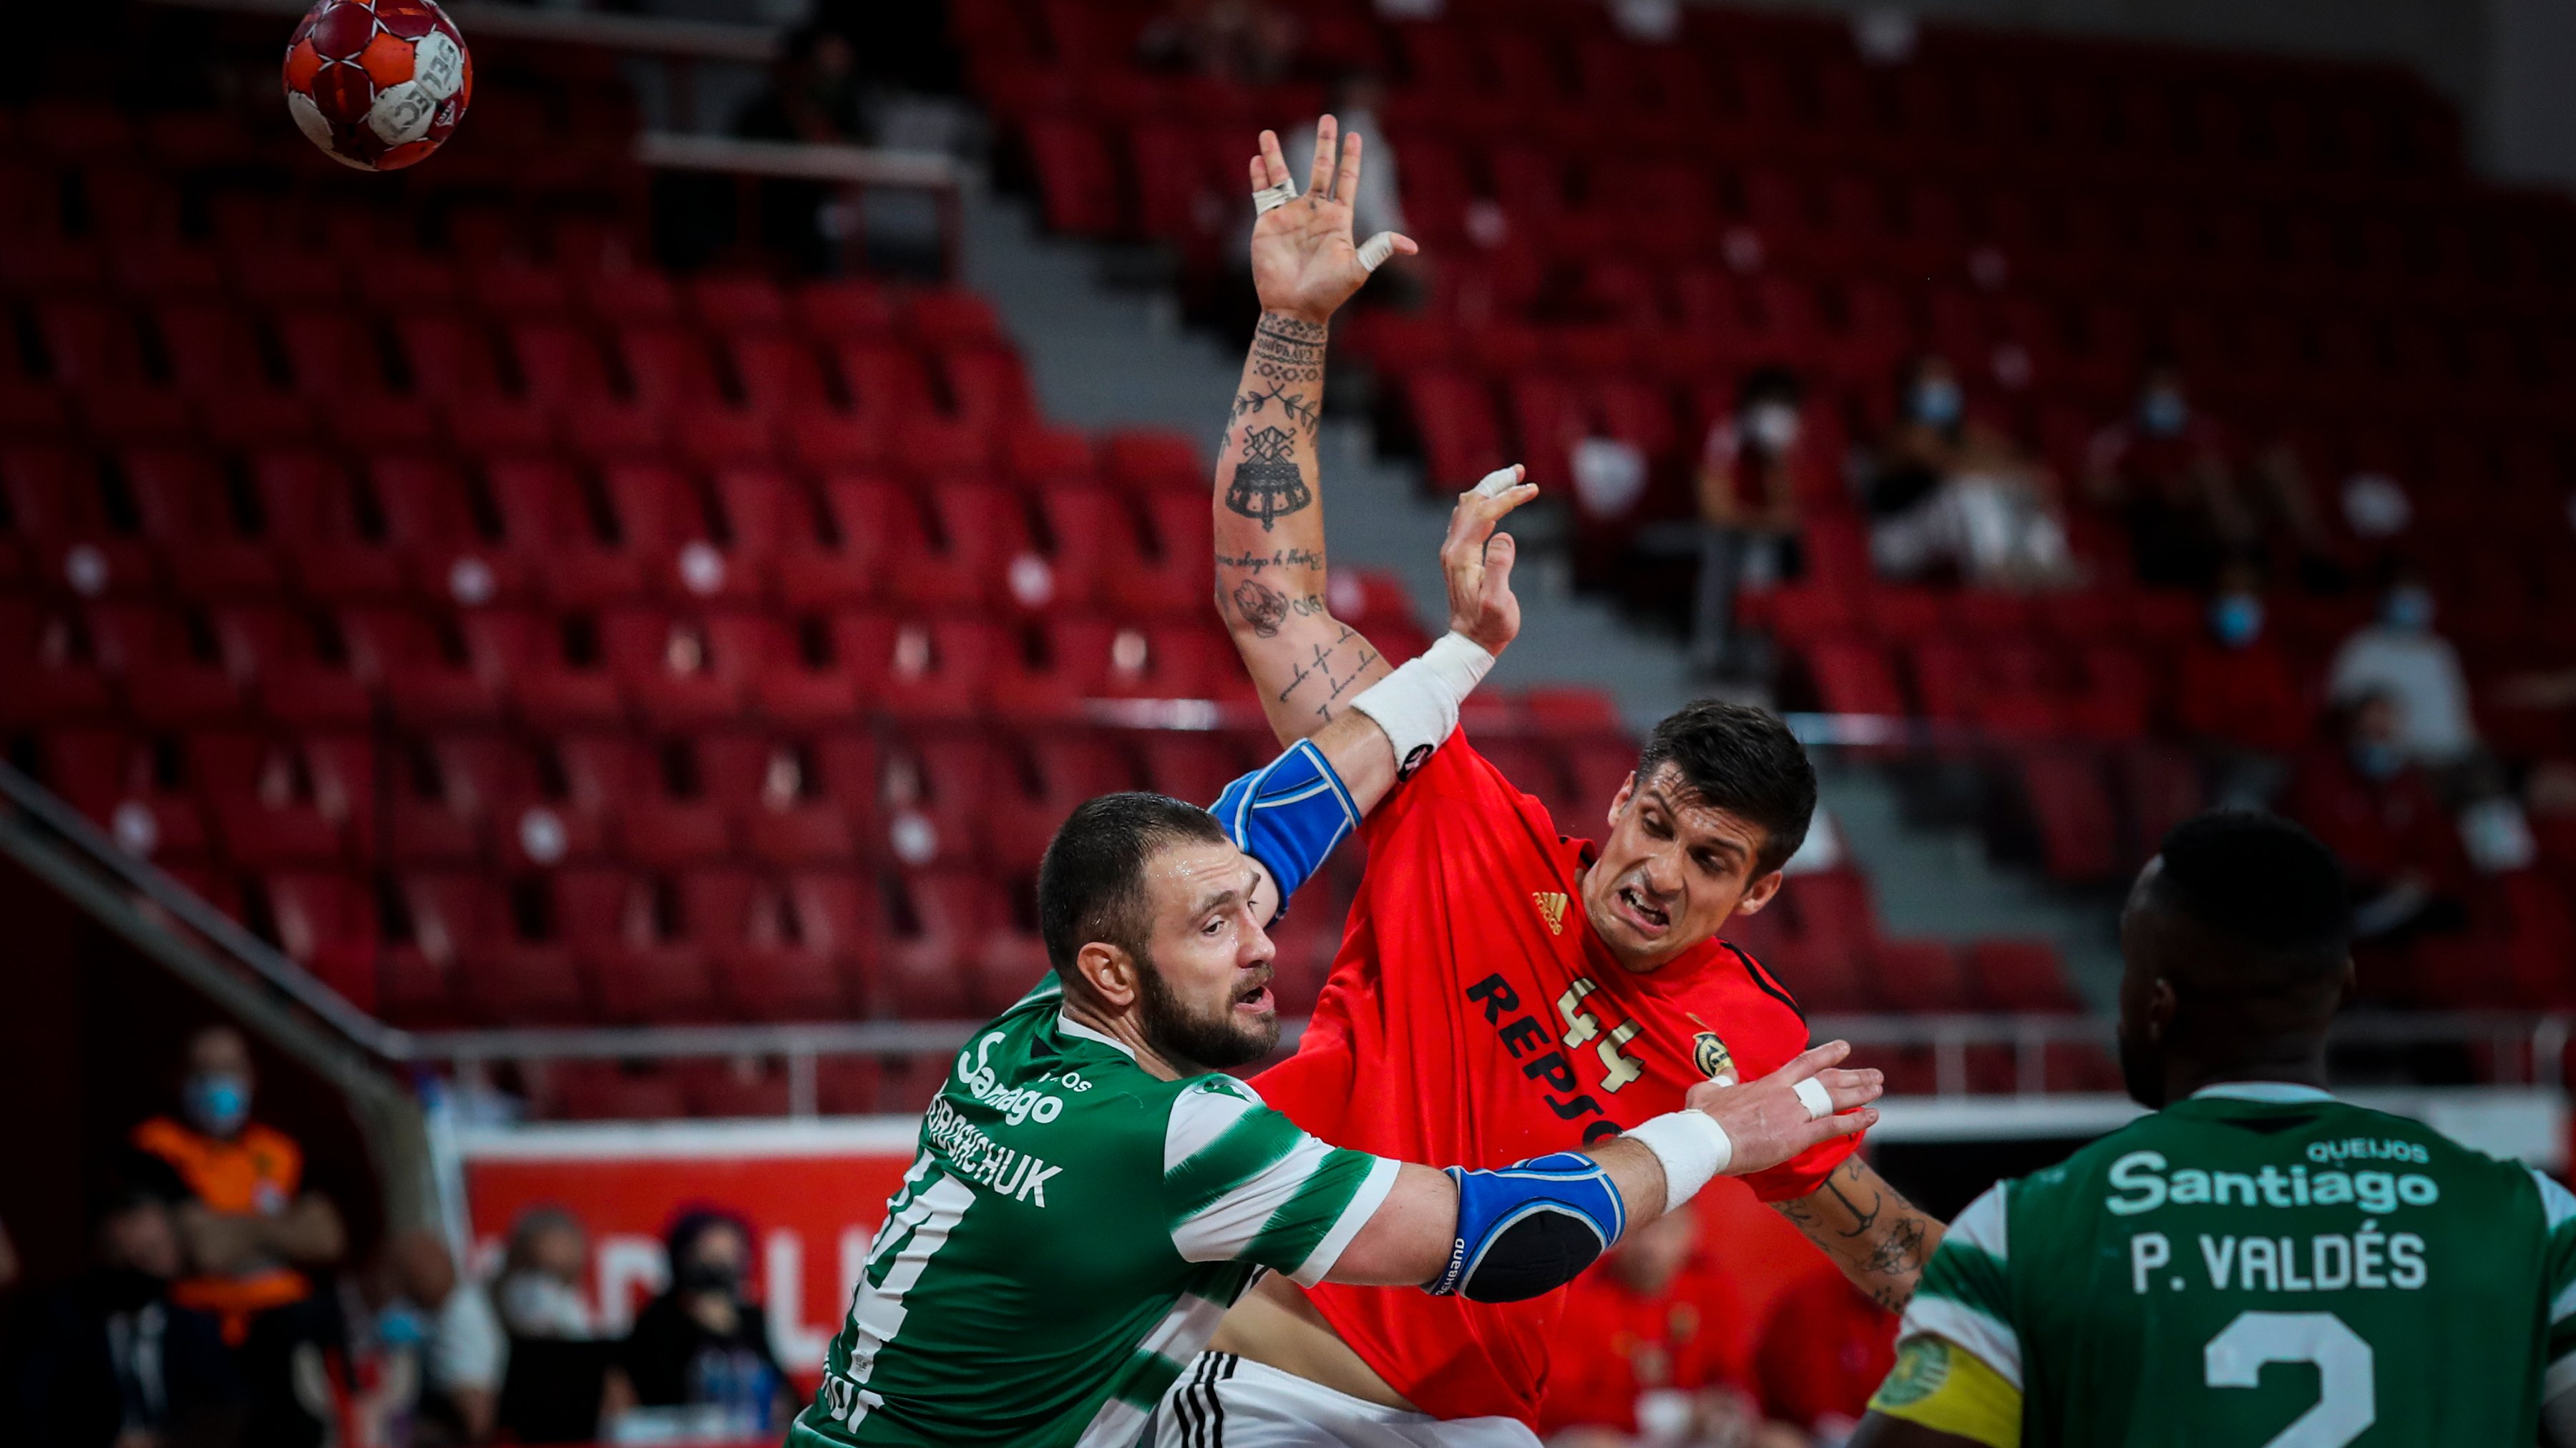 Petar Djordjic tinha marcado 11 golos no último dérbi para o Campeonato e marcou agora mais 12 golos no dérbi das meias da Taça de Portugal